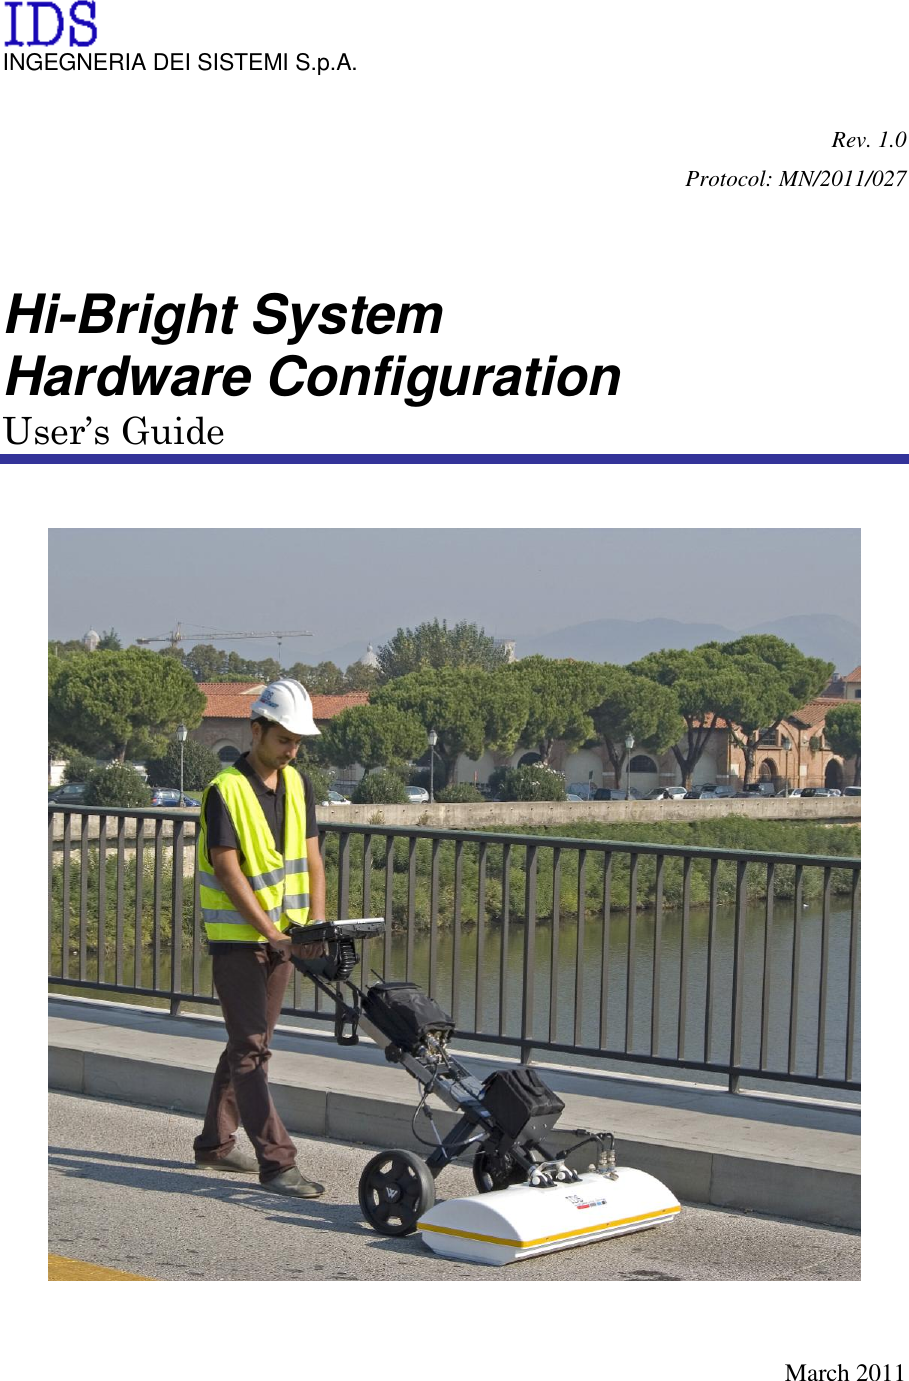   INGEGNERIA DEI SISTEMI S.p.A.  Rev. 1.0 Protocol: MN/2011/027   Hi-Bright System Hardware Configuration User’s Guide      March 2011 